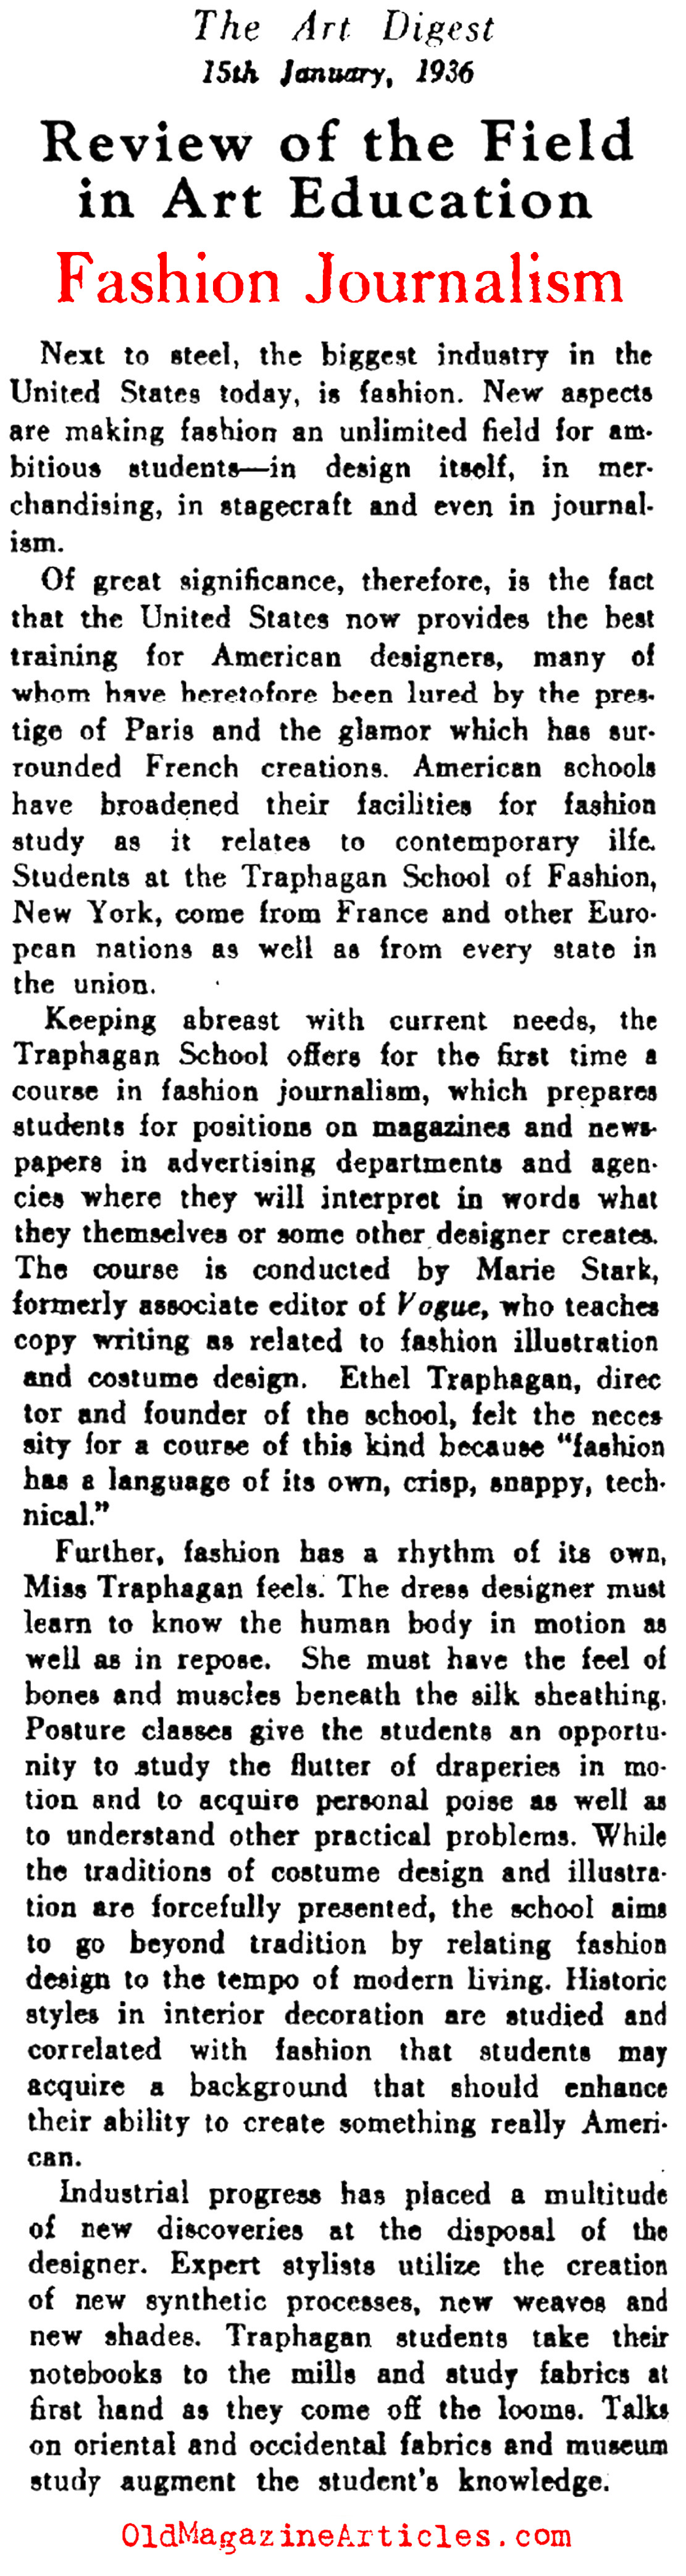 Fashion Journalism Goes Legit (Art Digest, 1936)